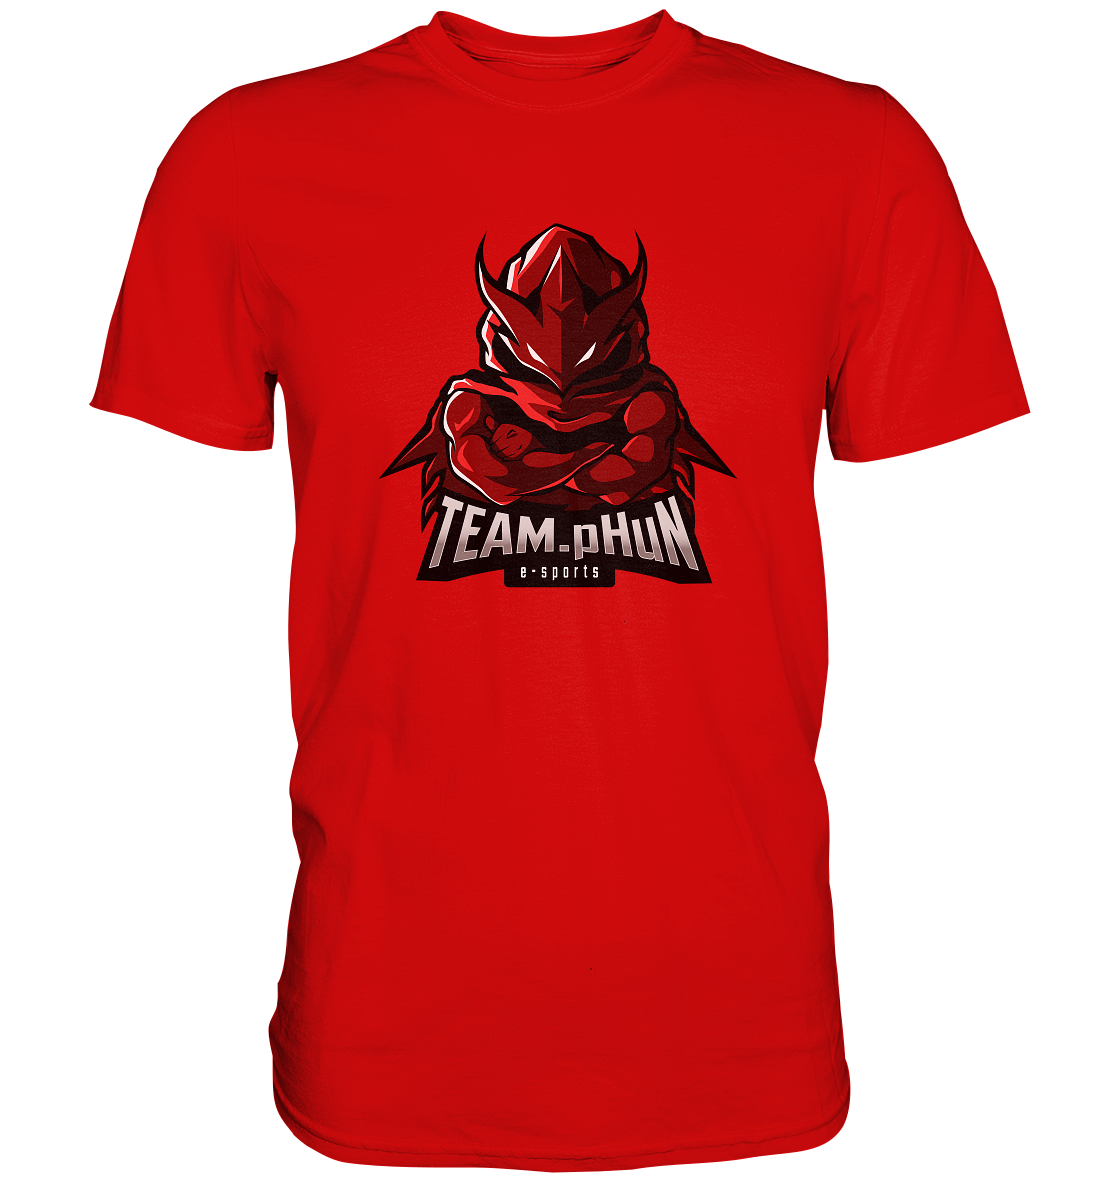 TEAM PHUN - Basic Shirt